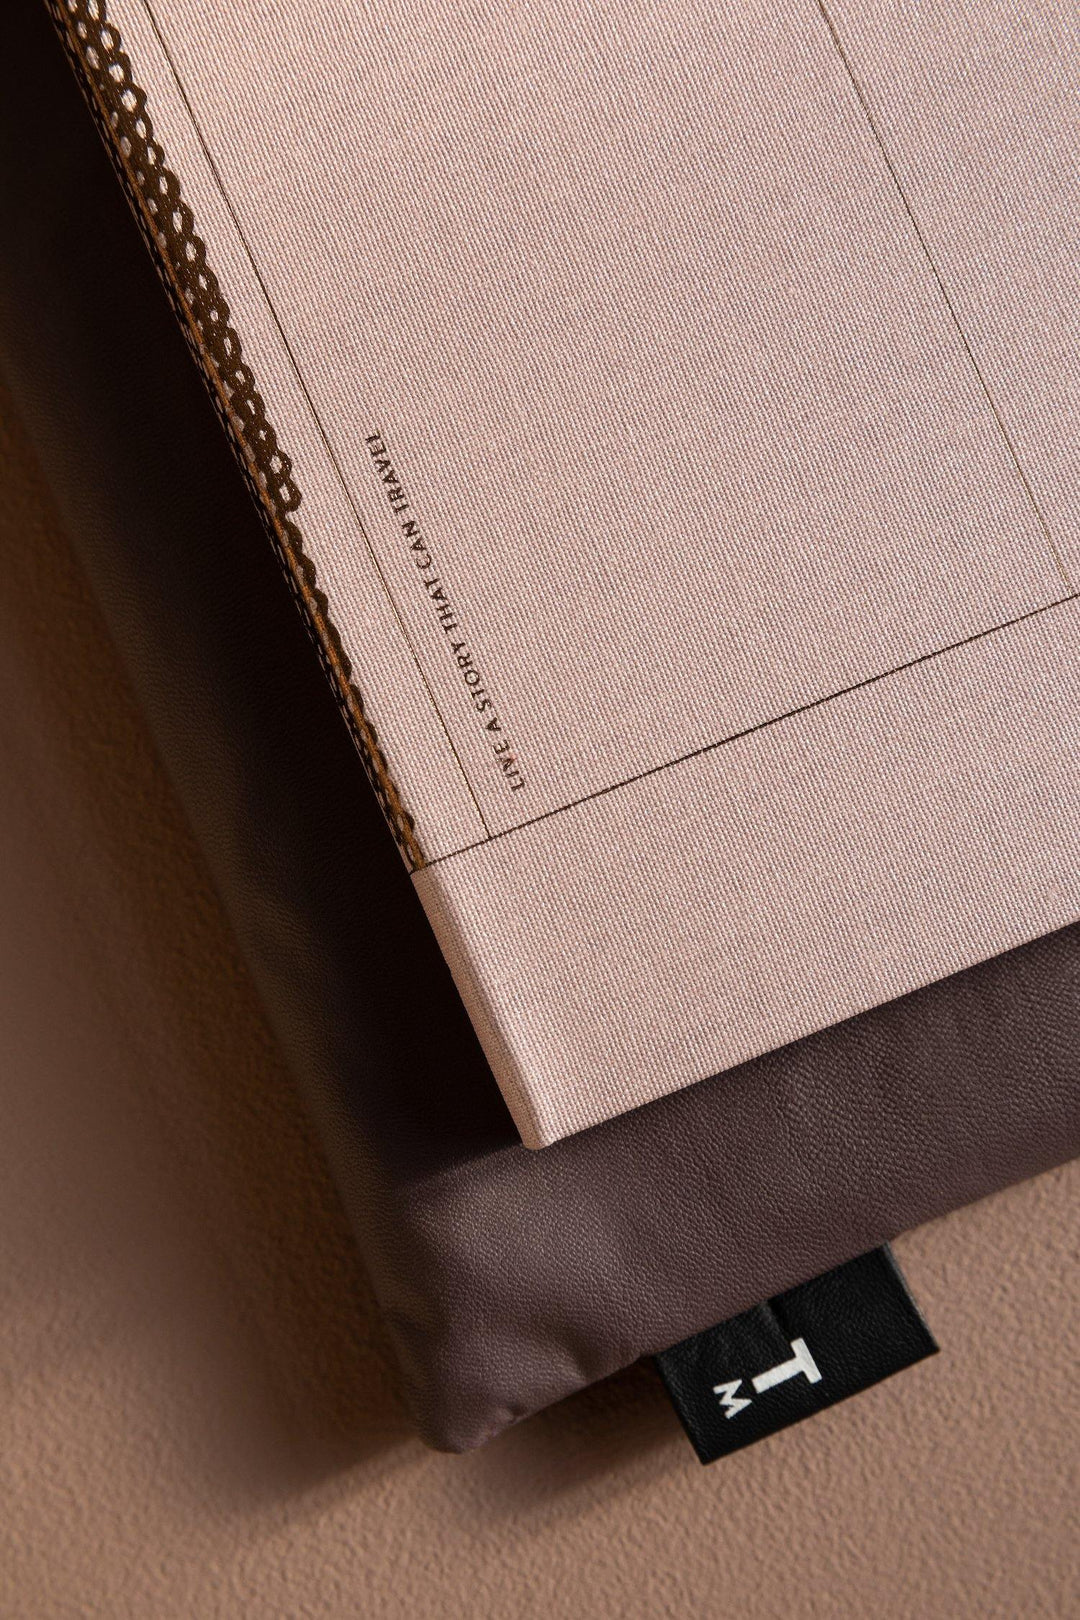 Tinne + Mia – Linen Notebook Rose Pâle – Cuaderno rayado y puntos A5 (18 x 22,5 cm)